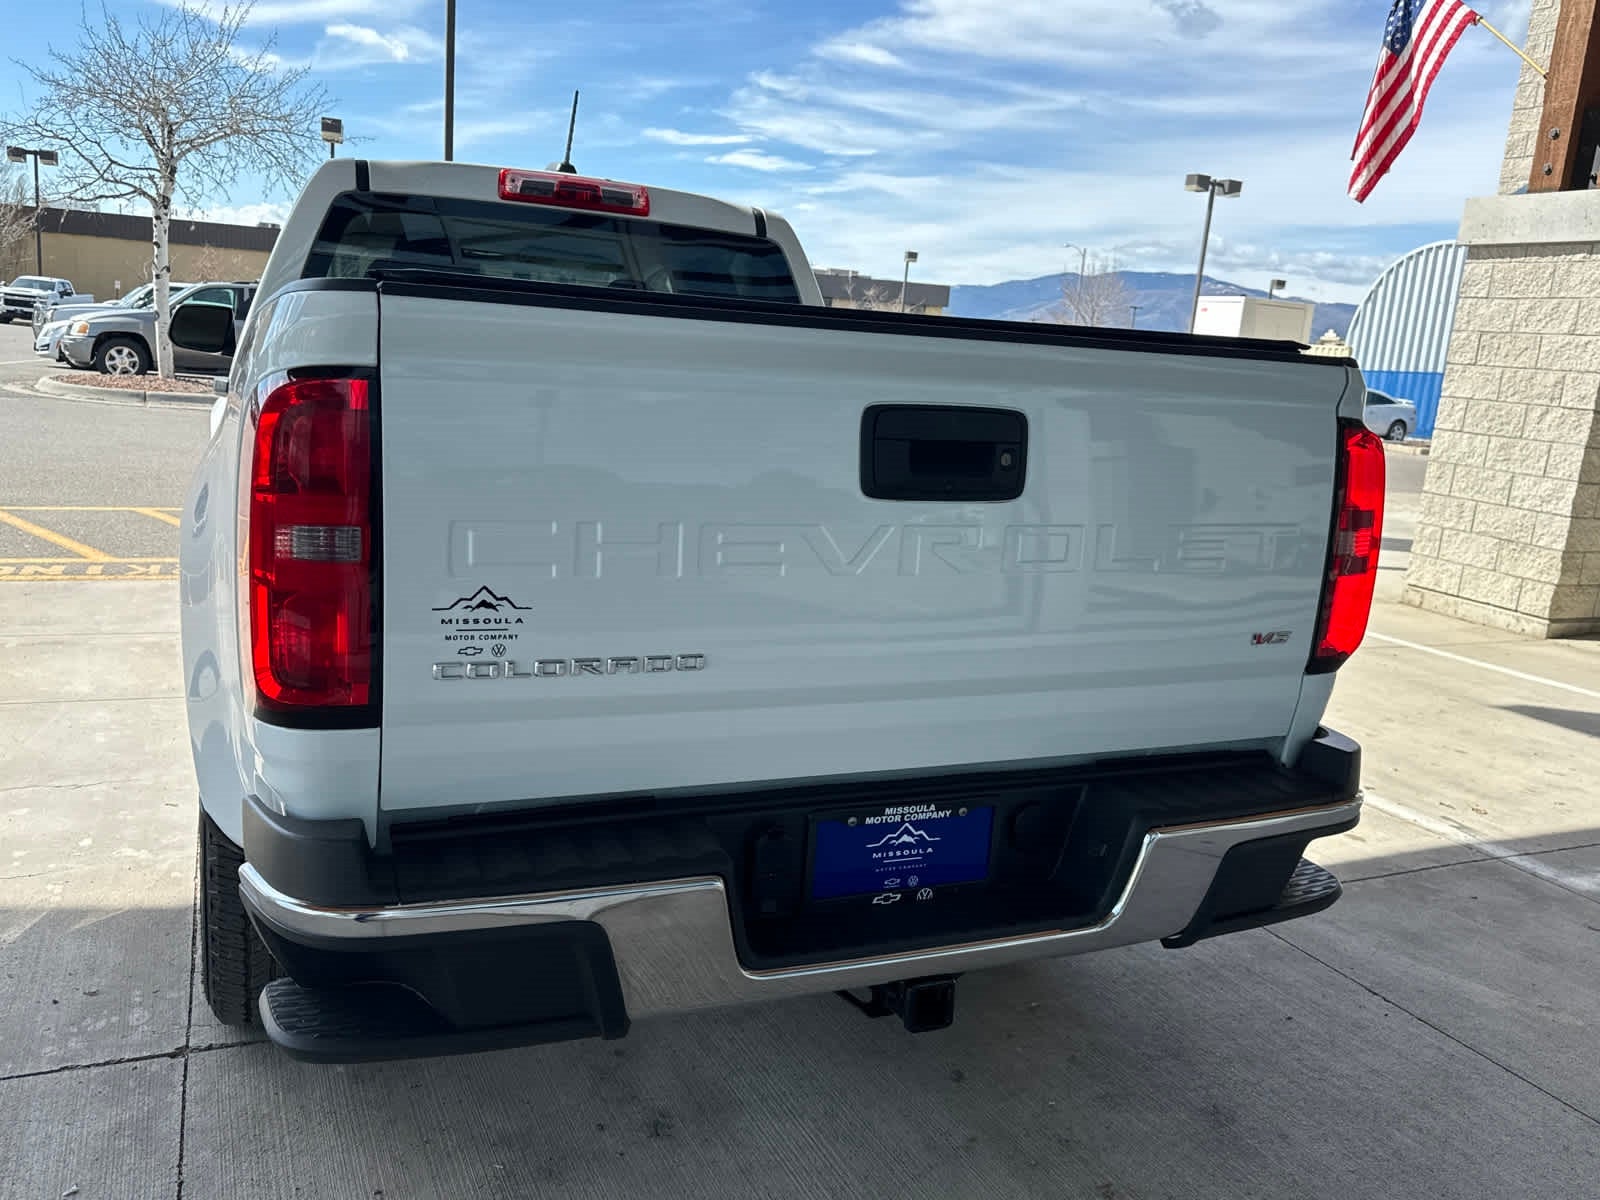 2022 Chevrolet Colorado WT